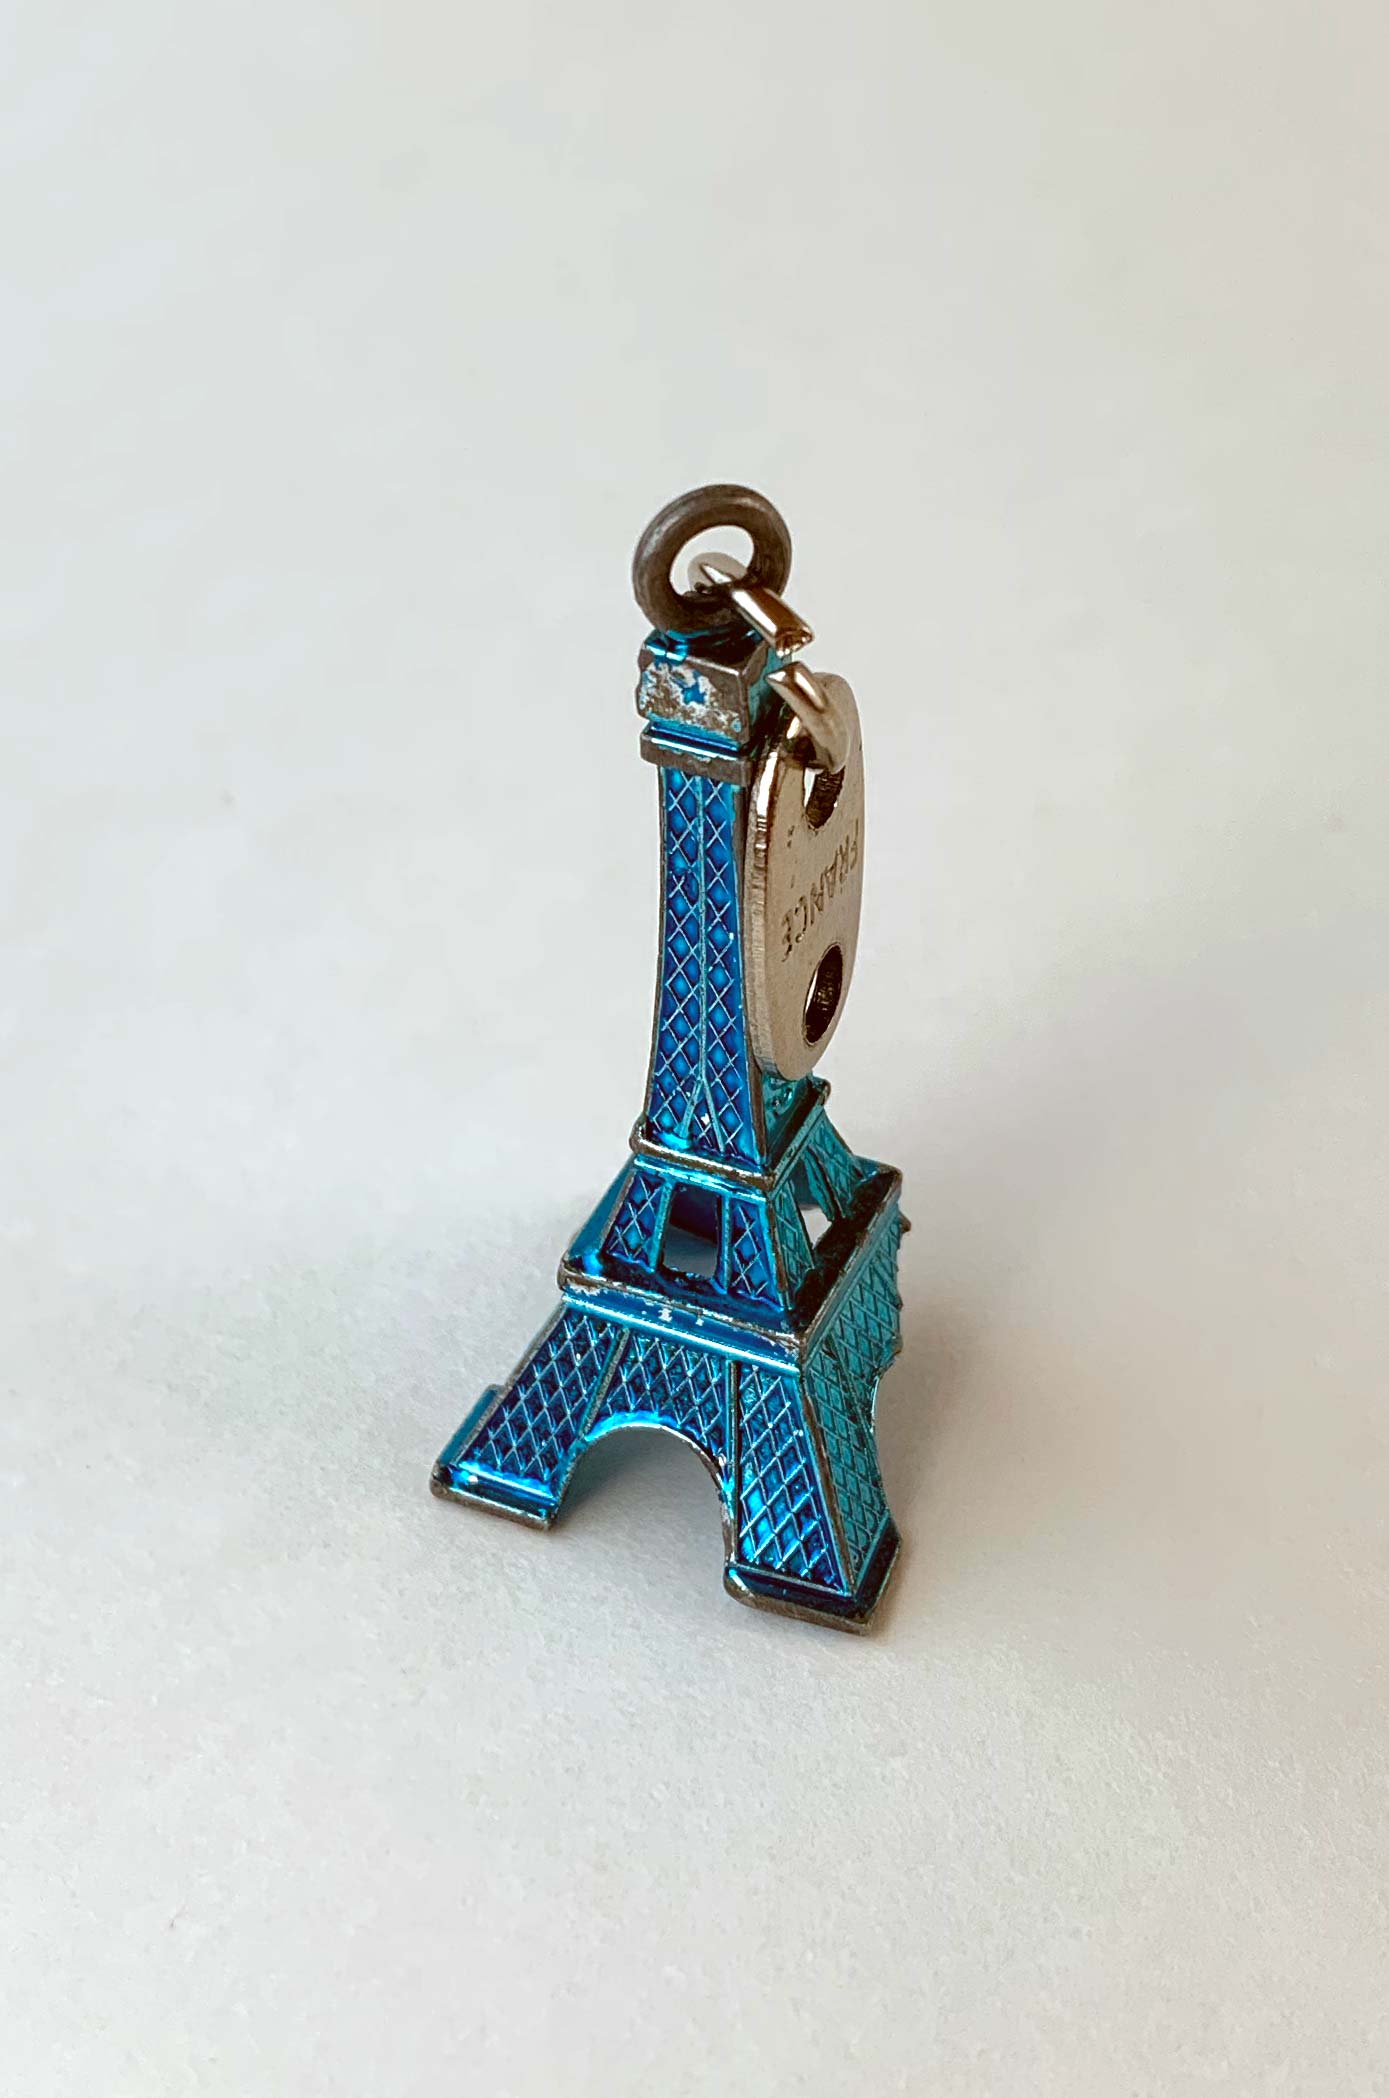 Paris Keychain